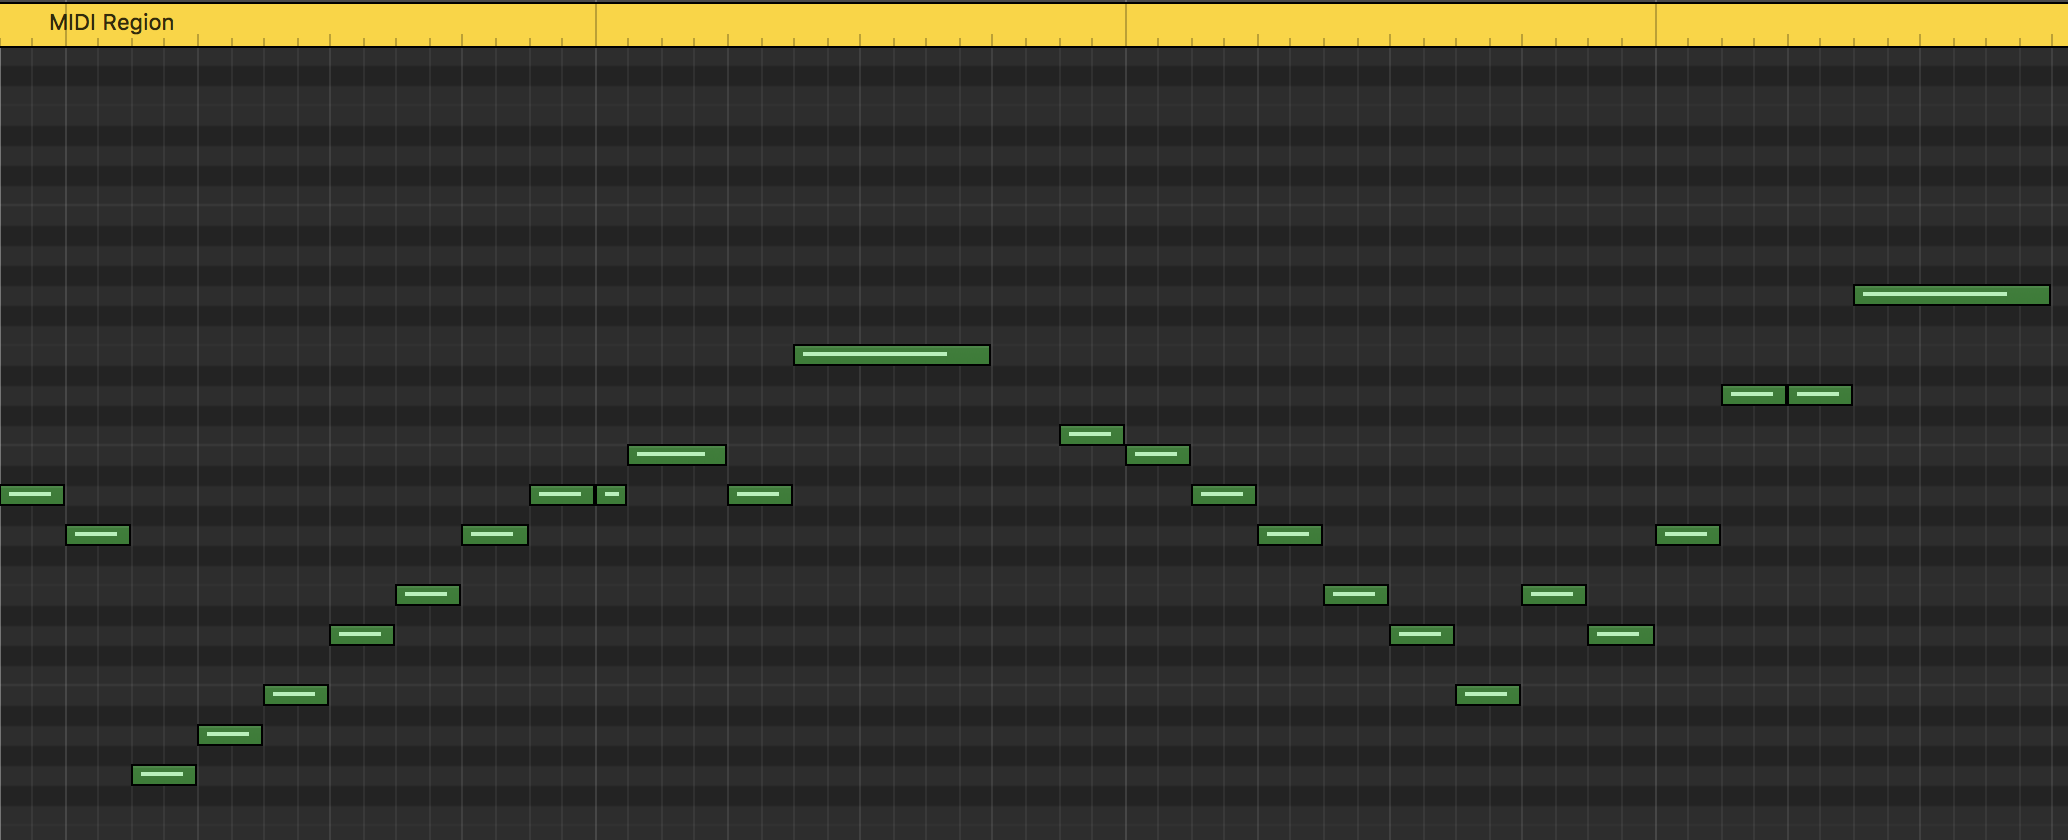 MIDI Data